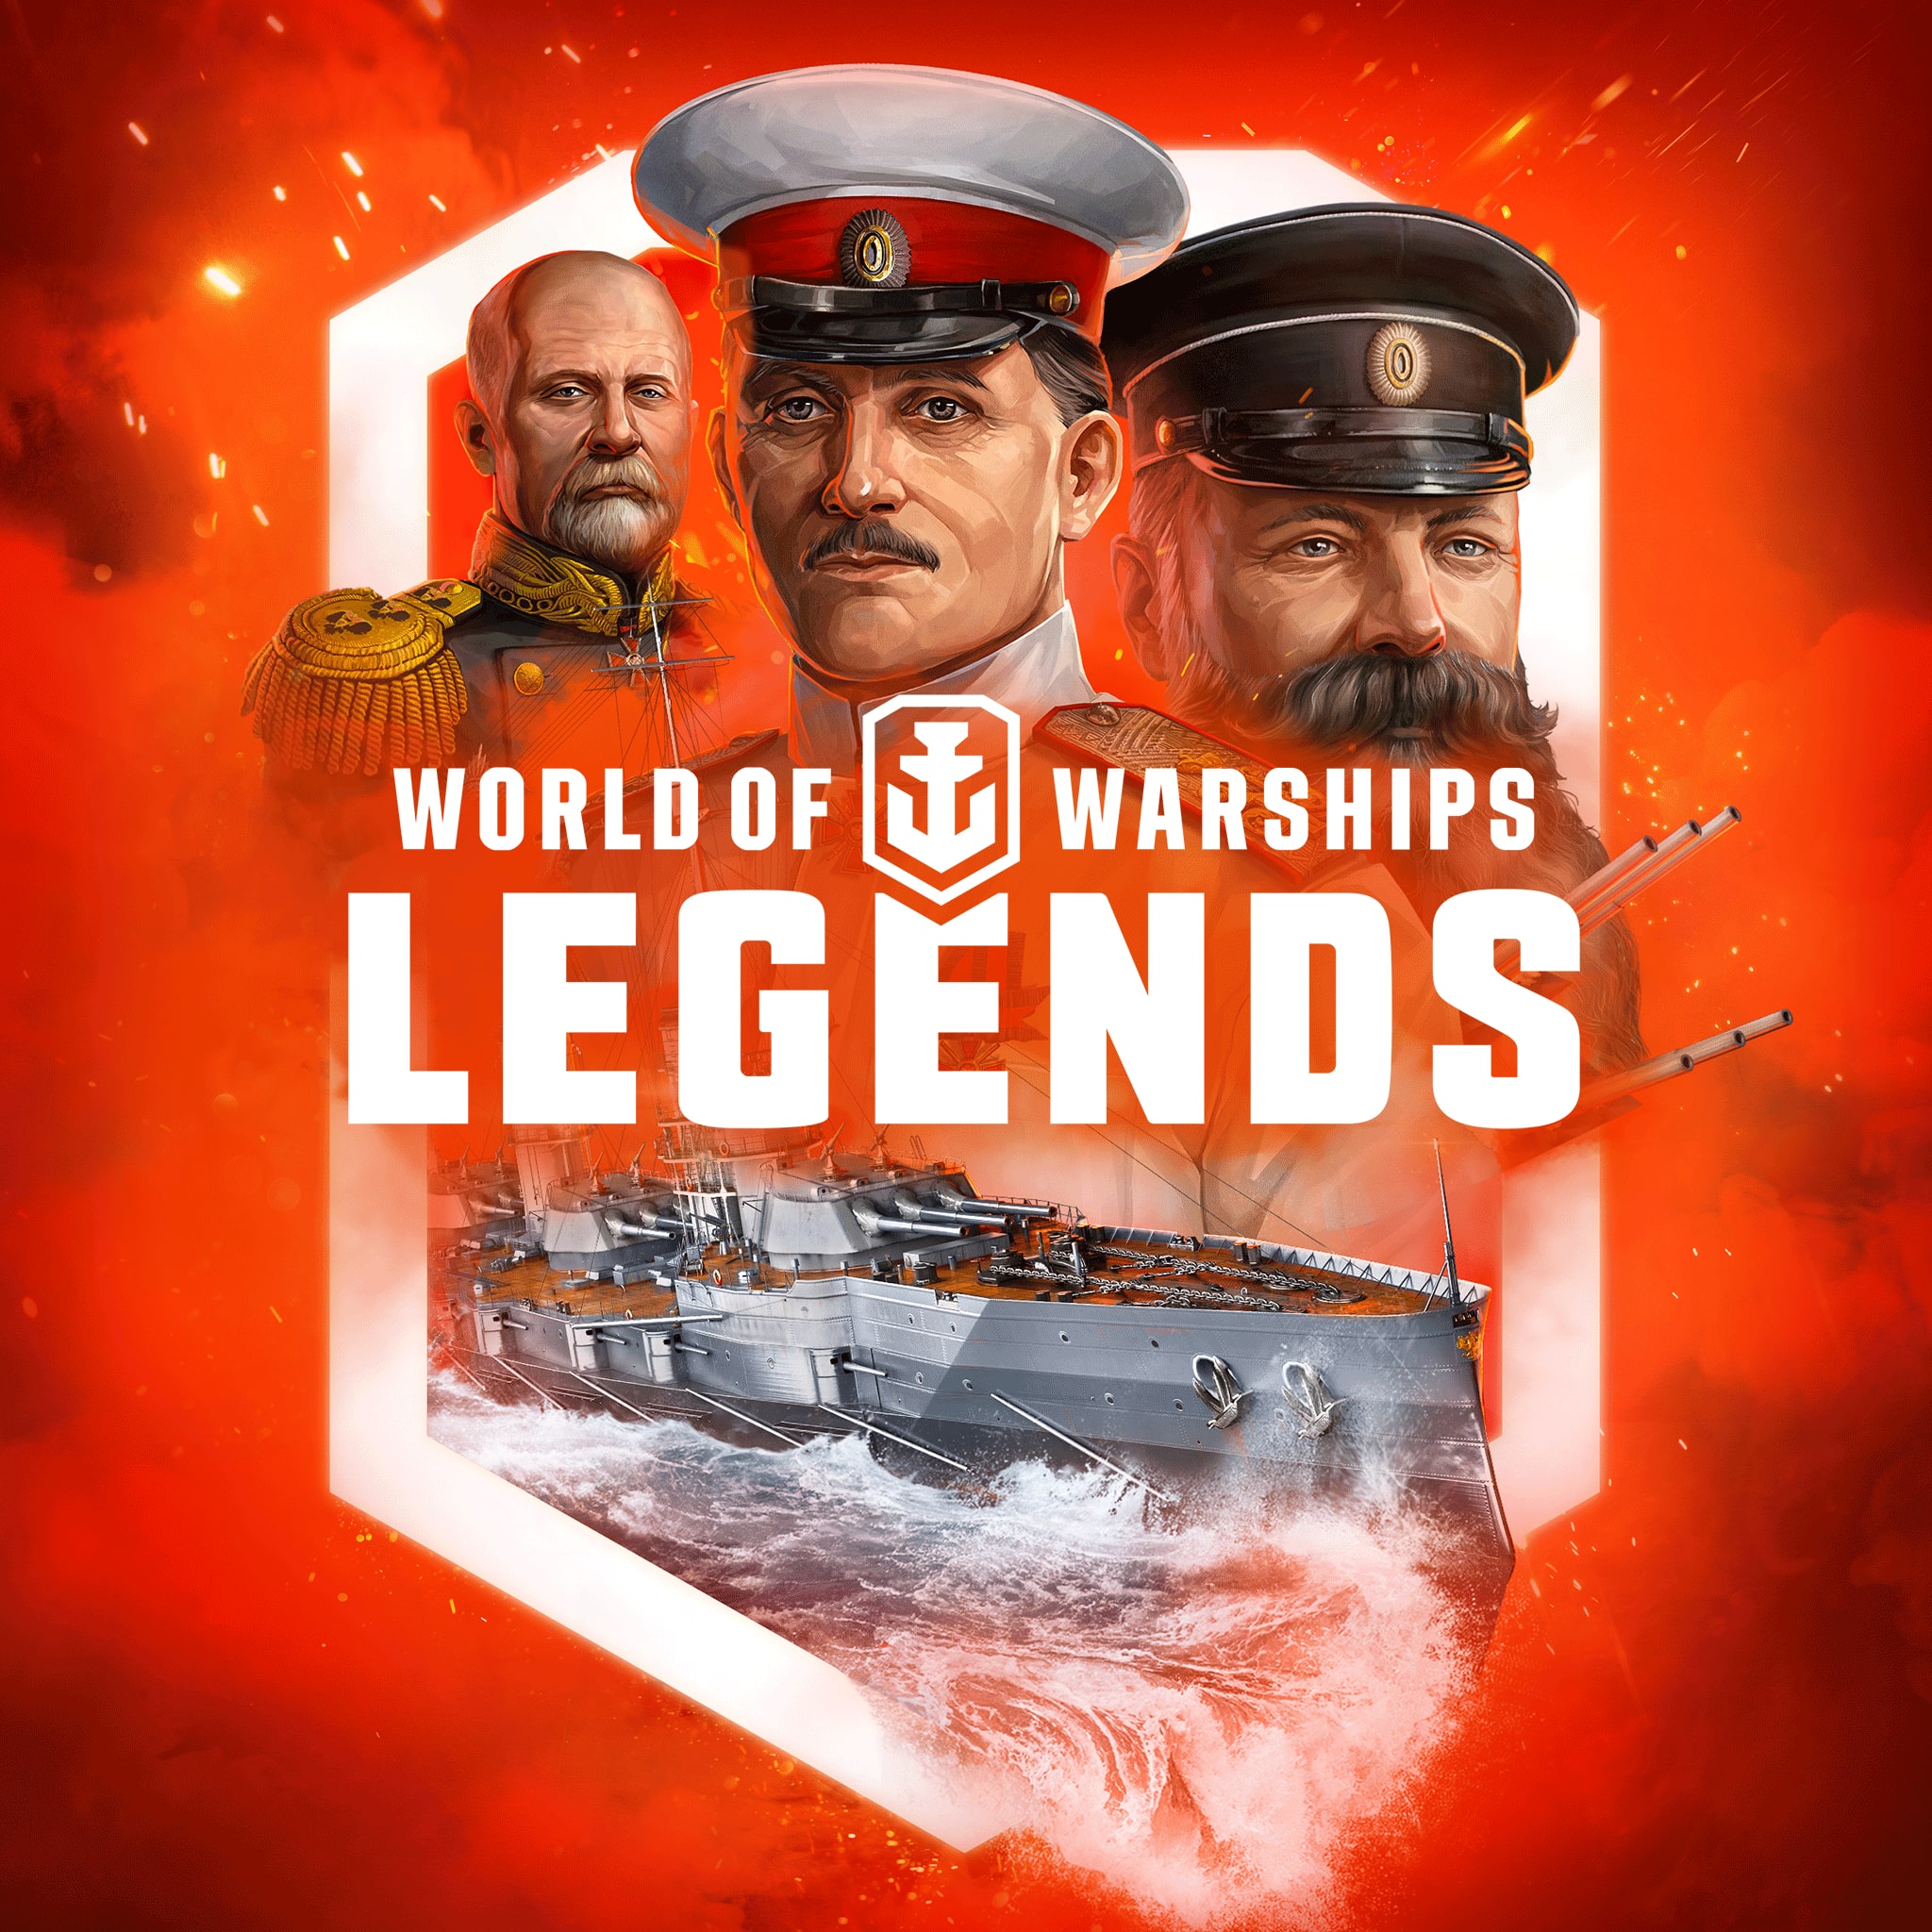 World of Warships: Legends — PS4 L'empereur russe